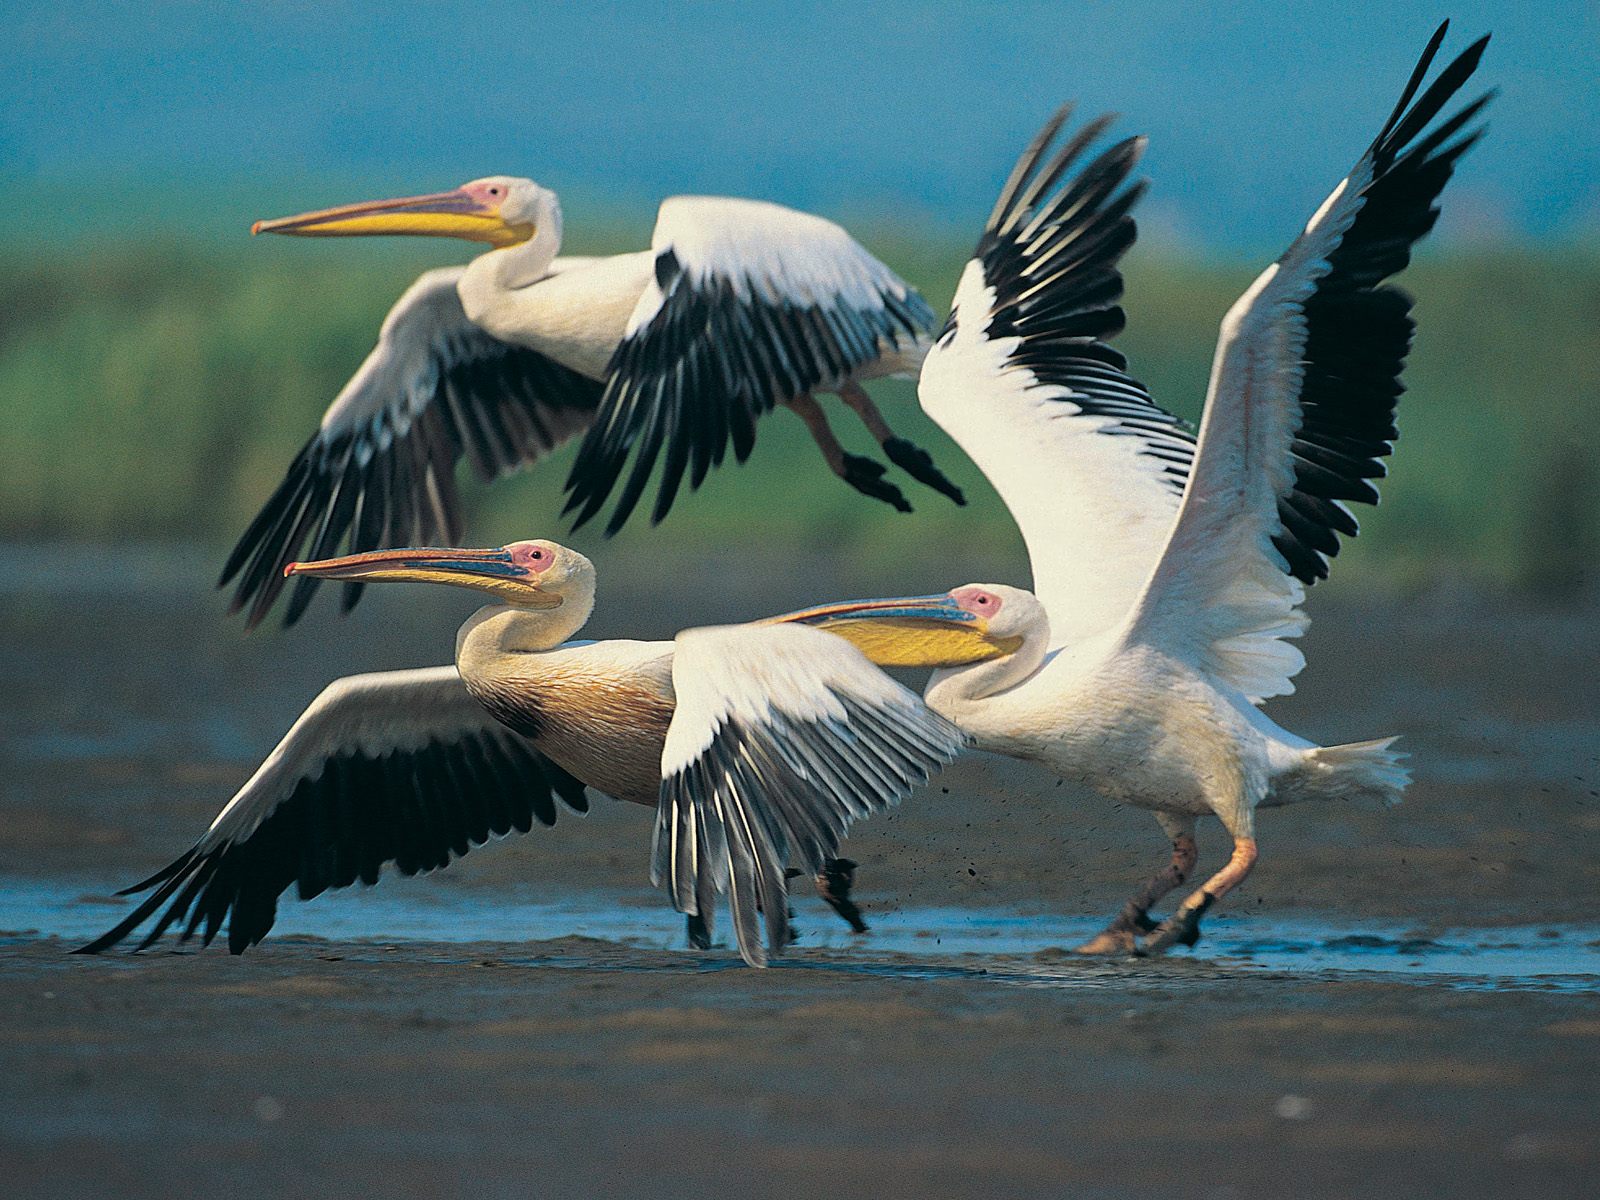 flying birds wallpaper,bird,pelican,vertebrate,beak,white pelican